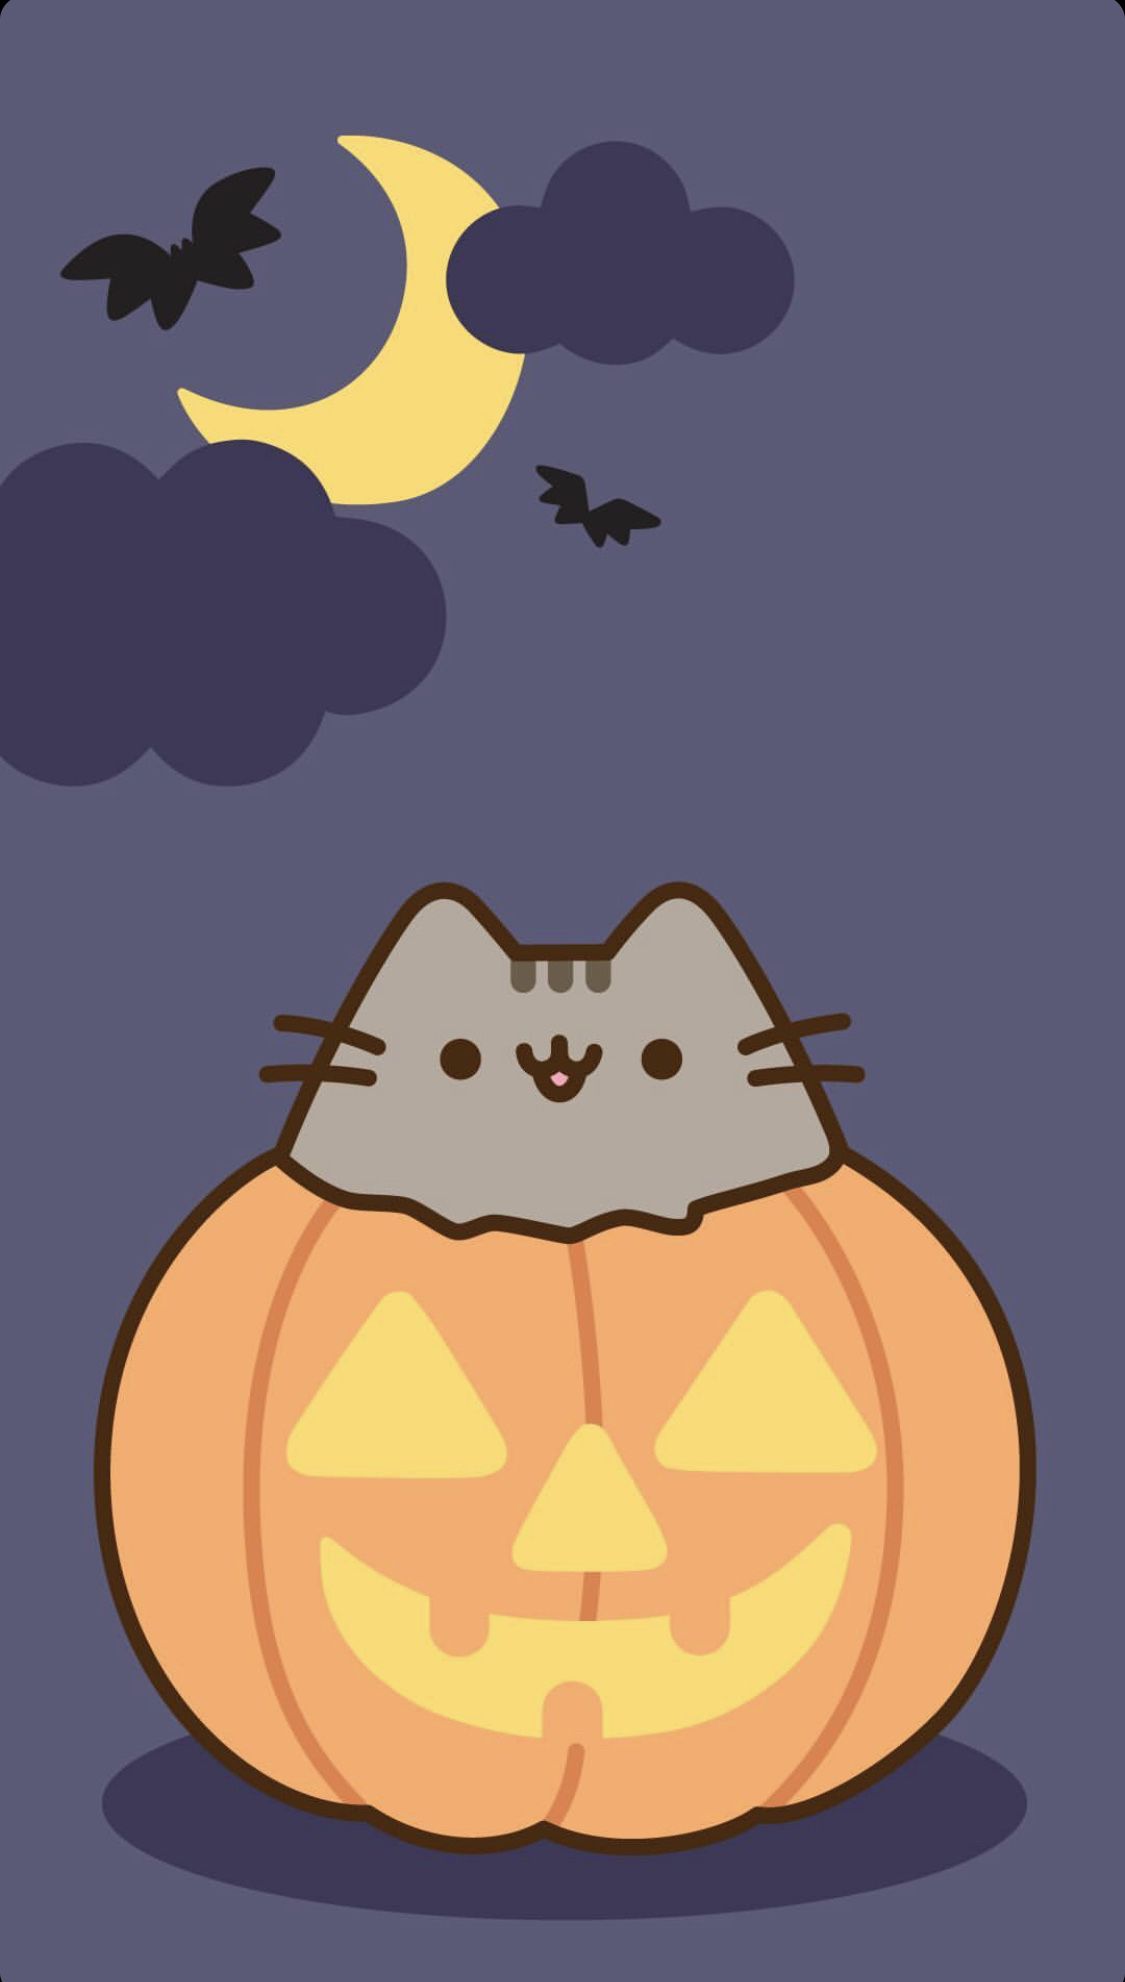 81959 Cute Halloween Wallpaper Images Stock Photos  Vectors   Shutterstock